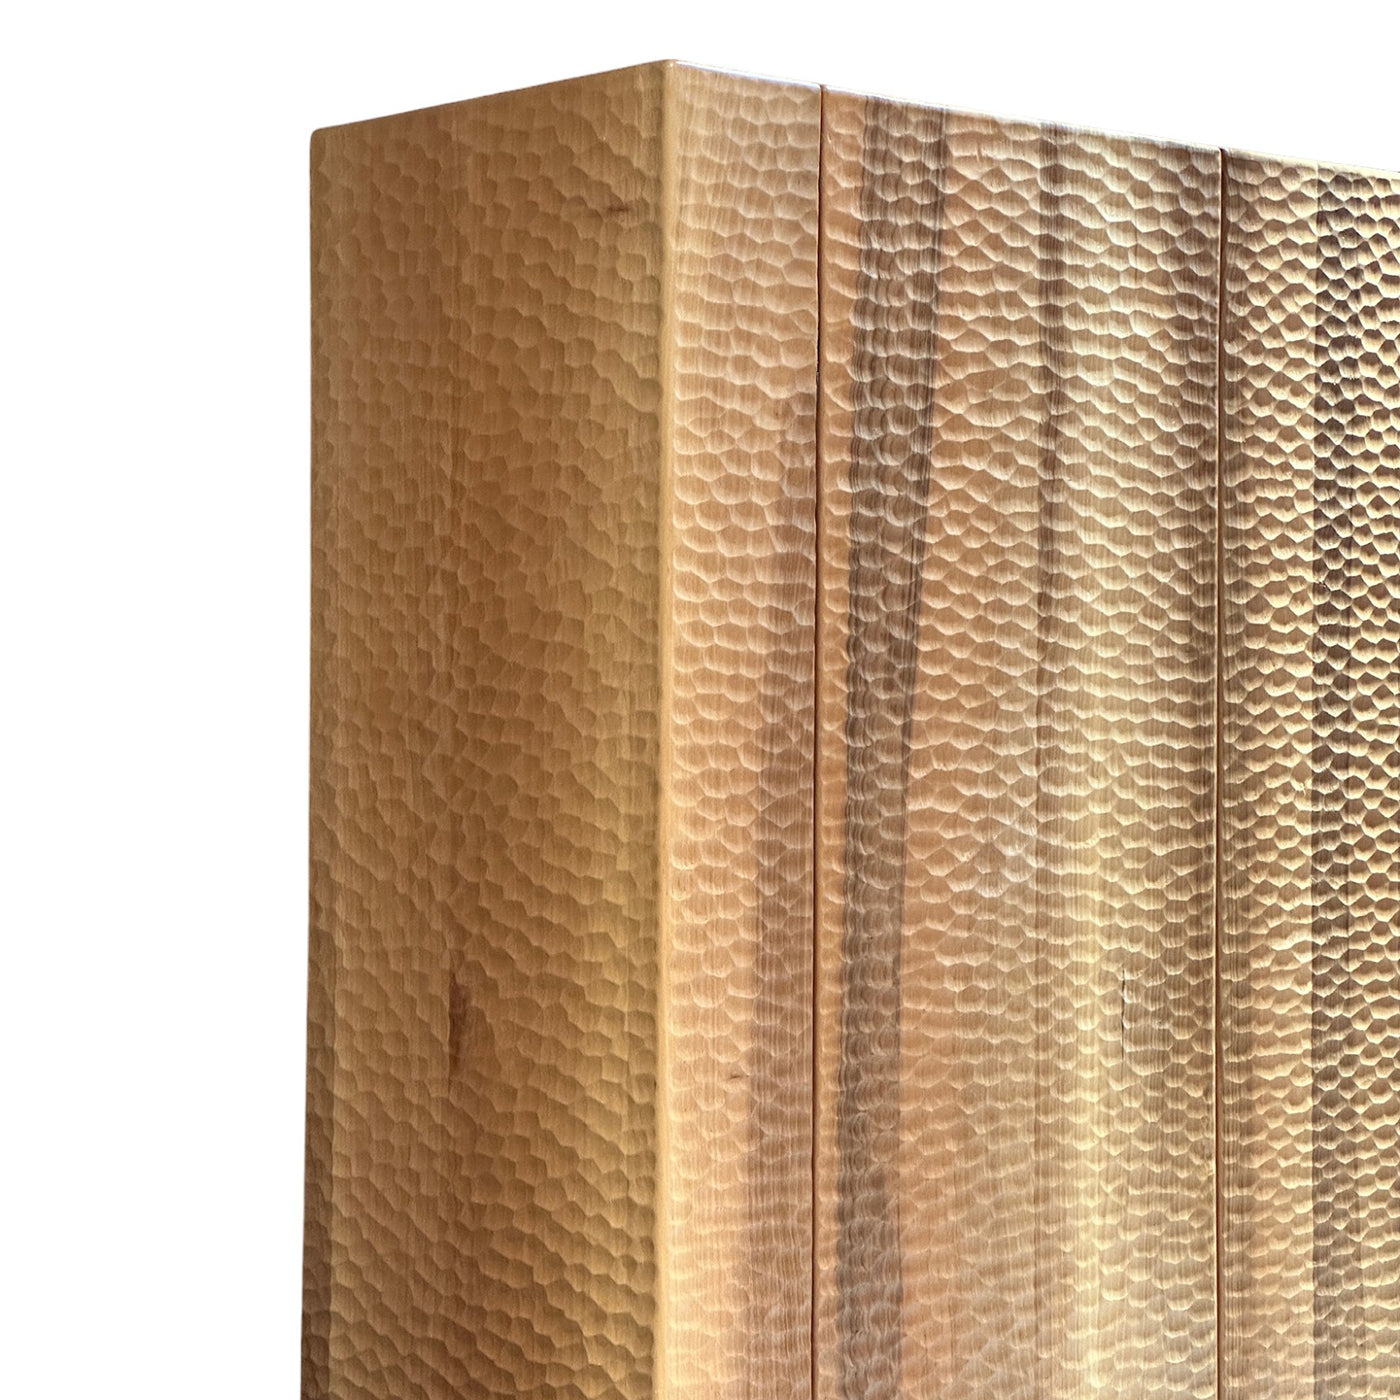 Dorica Textured Walnut Sideboard - Alternative view 1